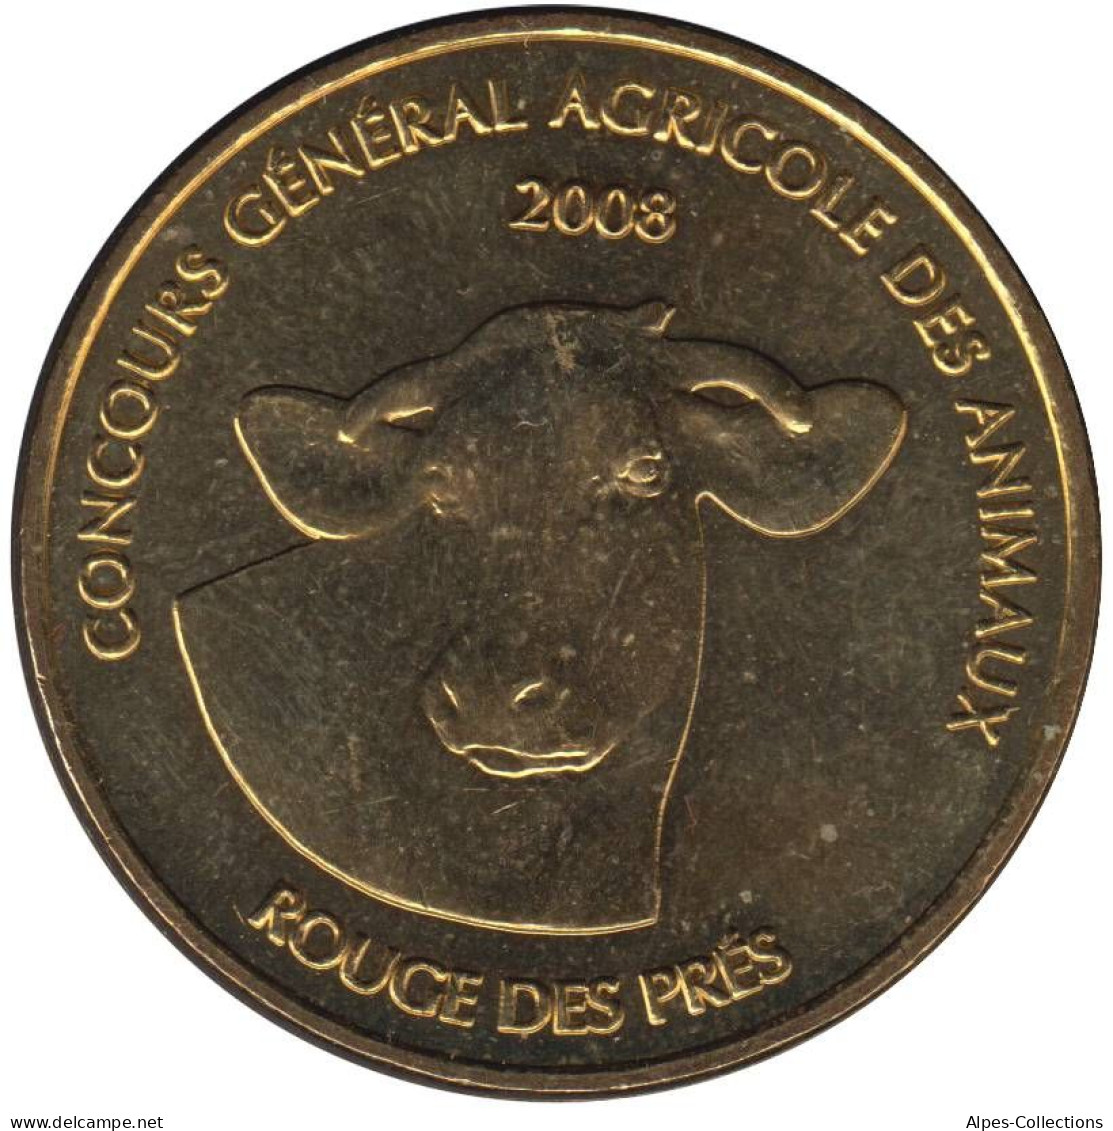 75-0703 - JETON TOURISTIQUE MDP - Concours Général Agricole Des Animaux - 2008.1 - 2008